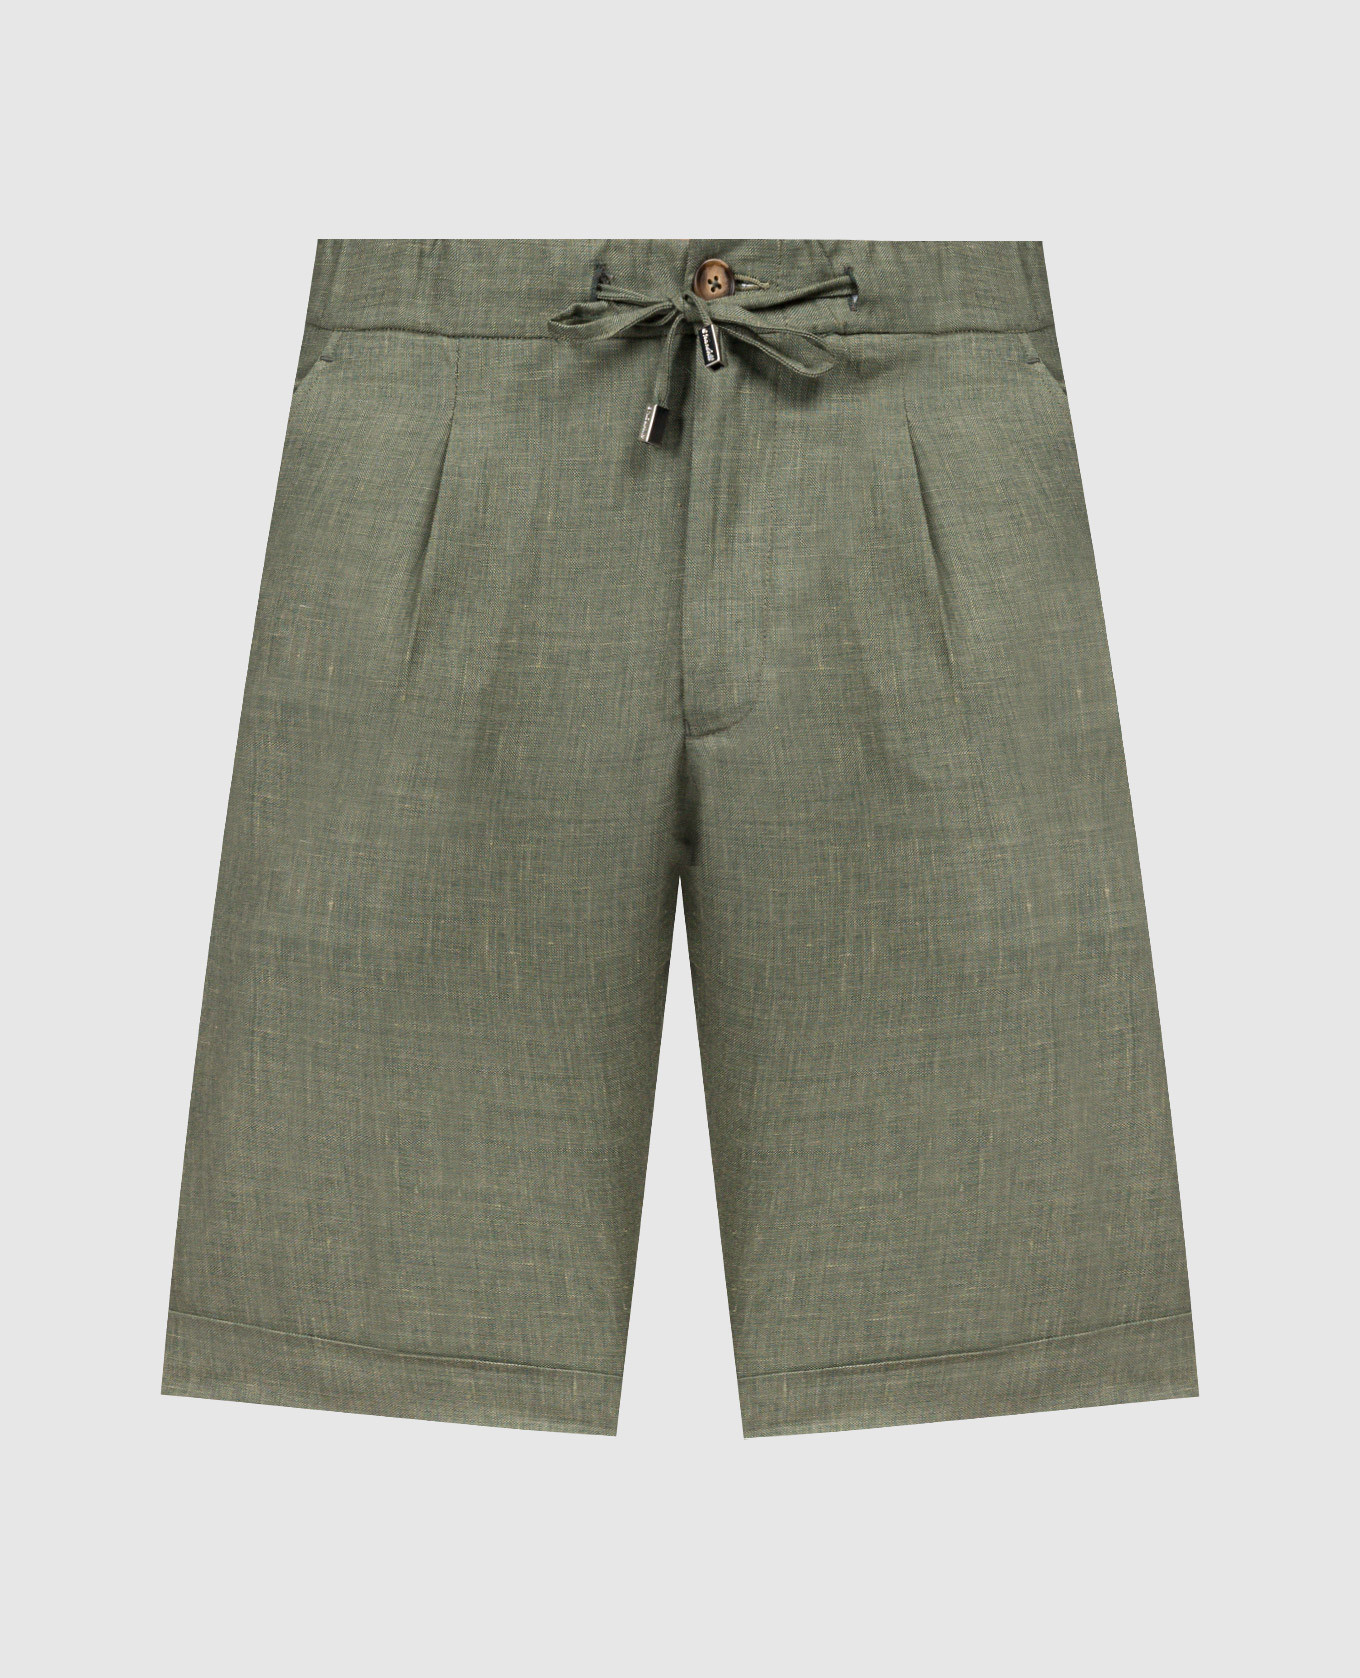 Green linen, wool and silk shorts